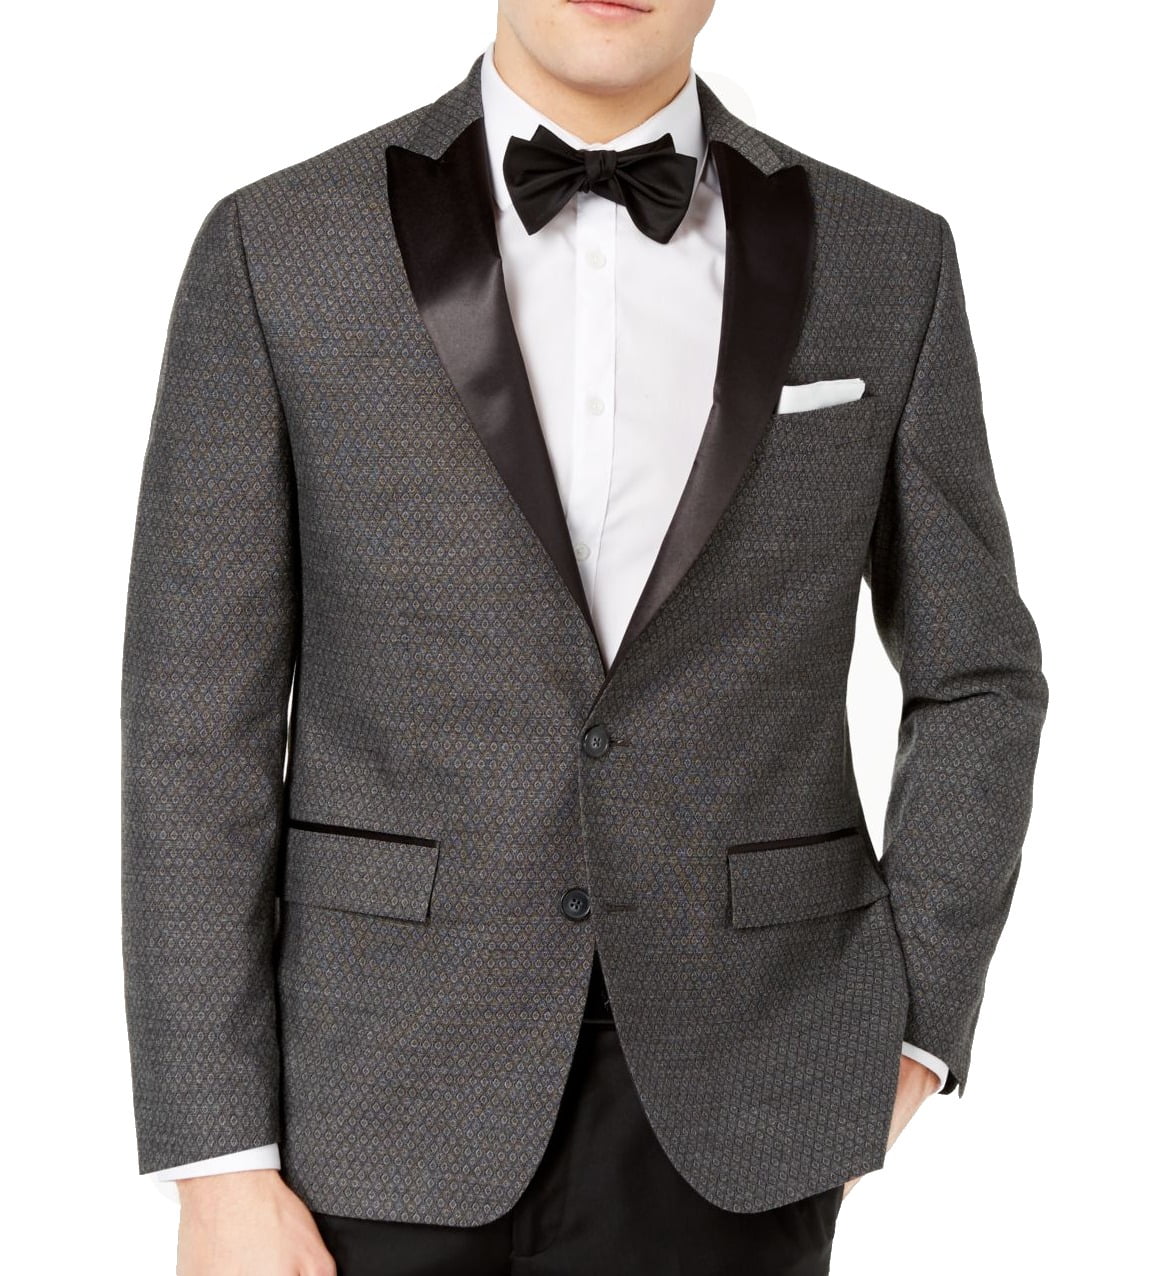 RYAN SEACREST Suits & Suit Separates - Mens Blazer 42S Short Slim Fit ...